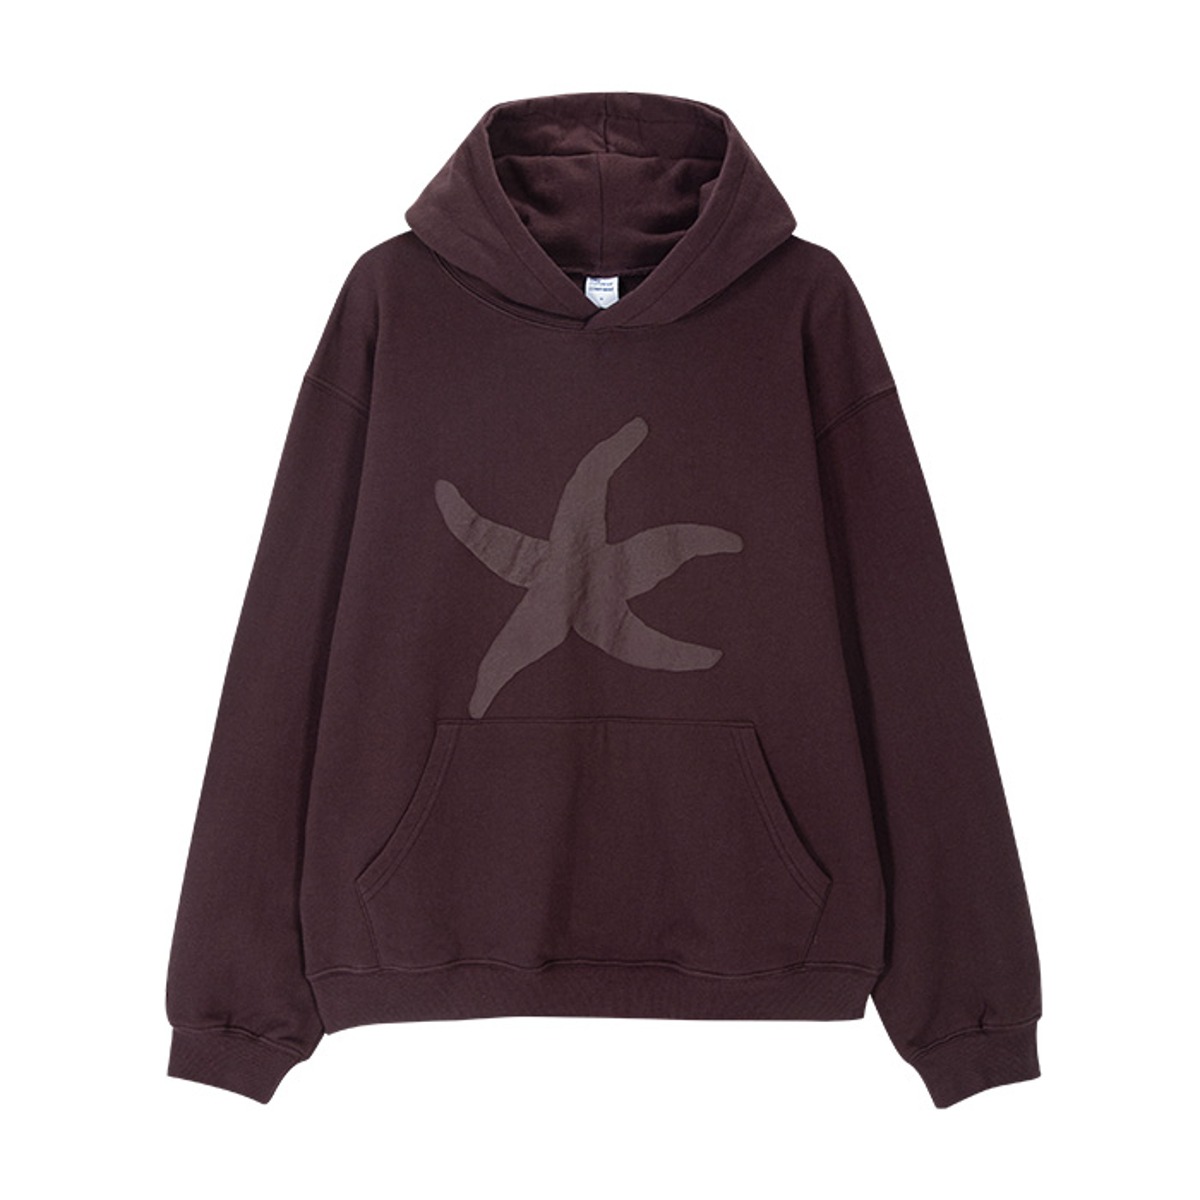 TCM starfish hoodie (dark wine) (10/24 예약배송)